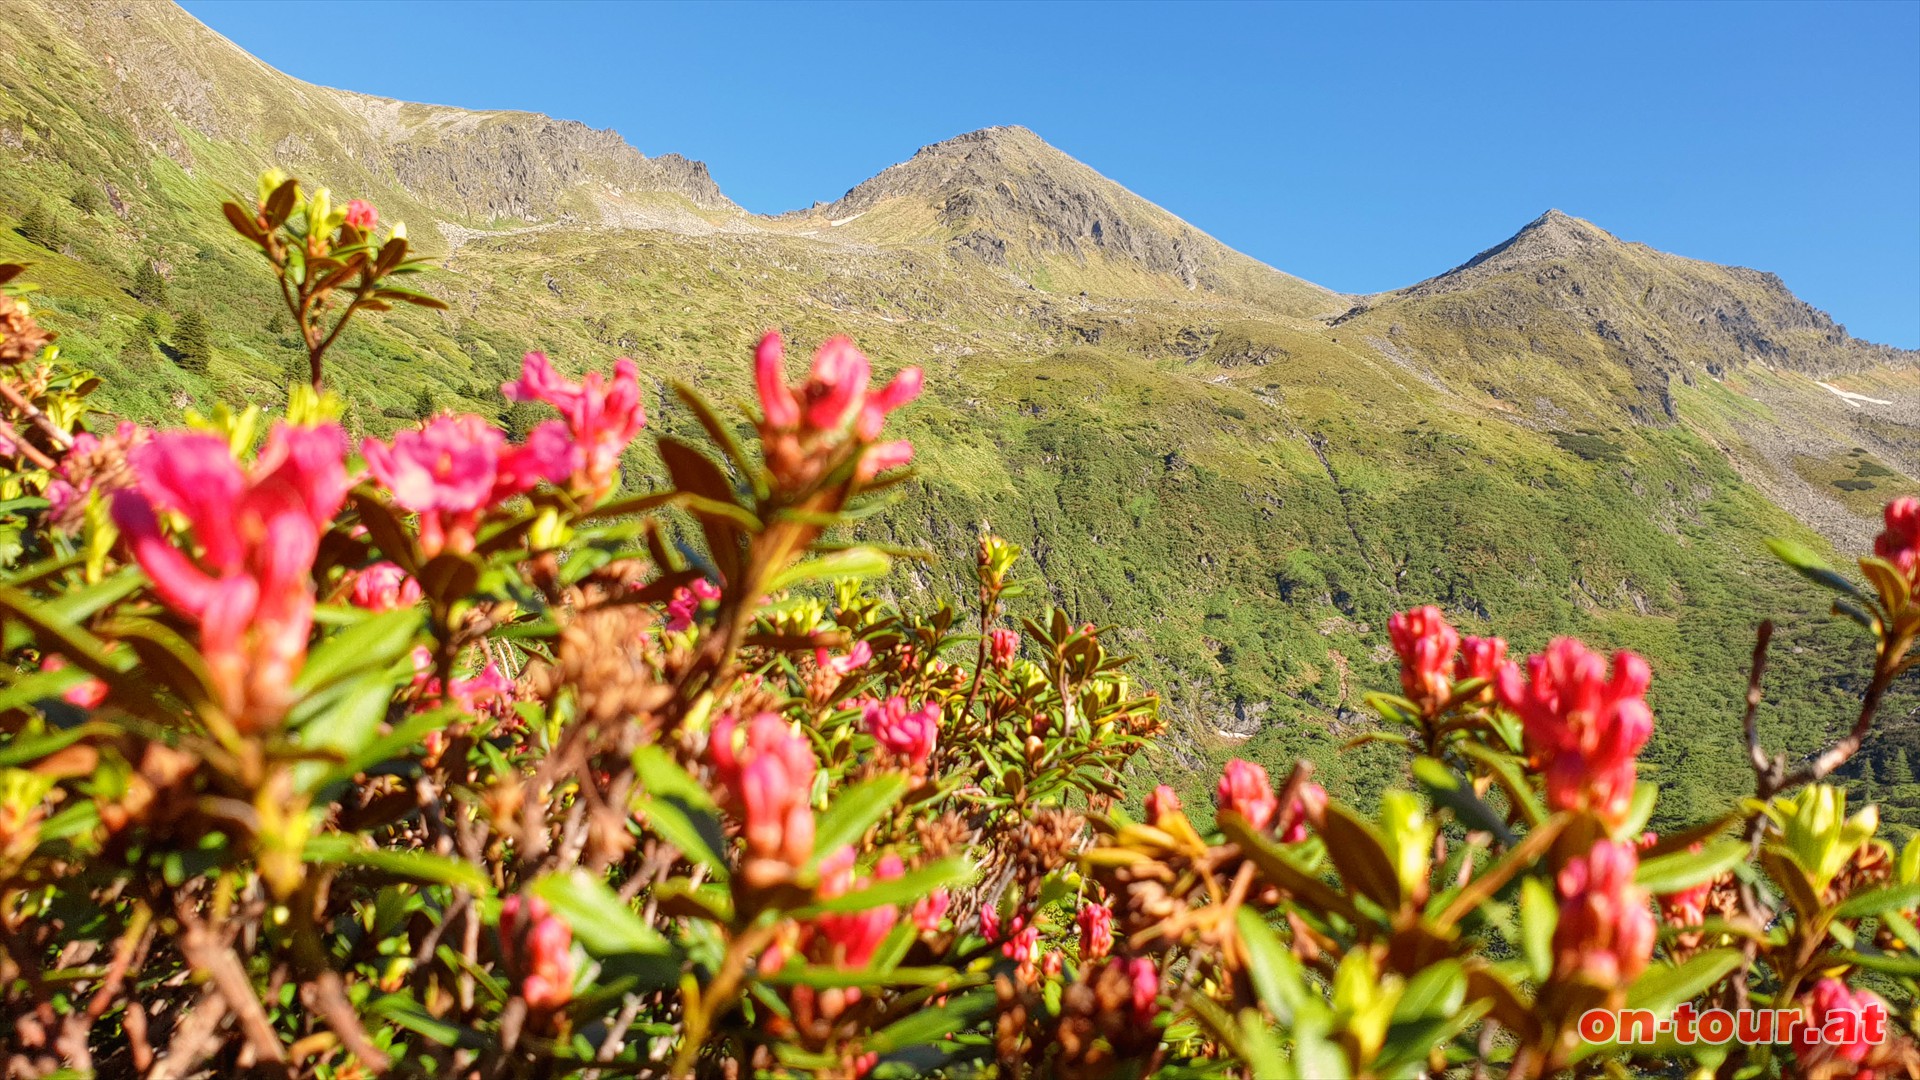 Alpenrose oder Almrausch; im Hintergrund der Hochstubofen.